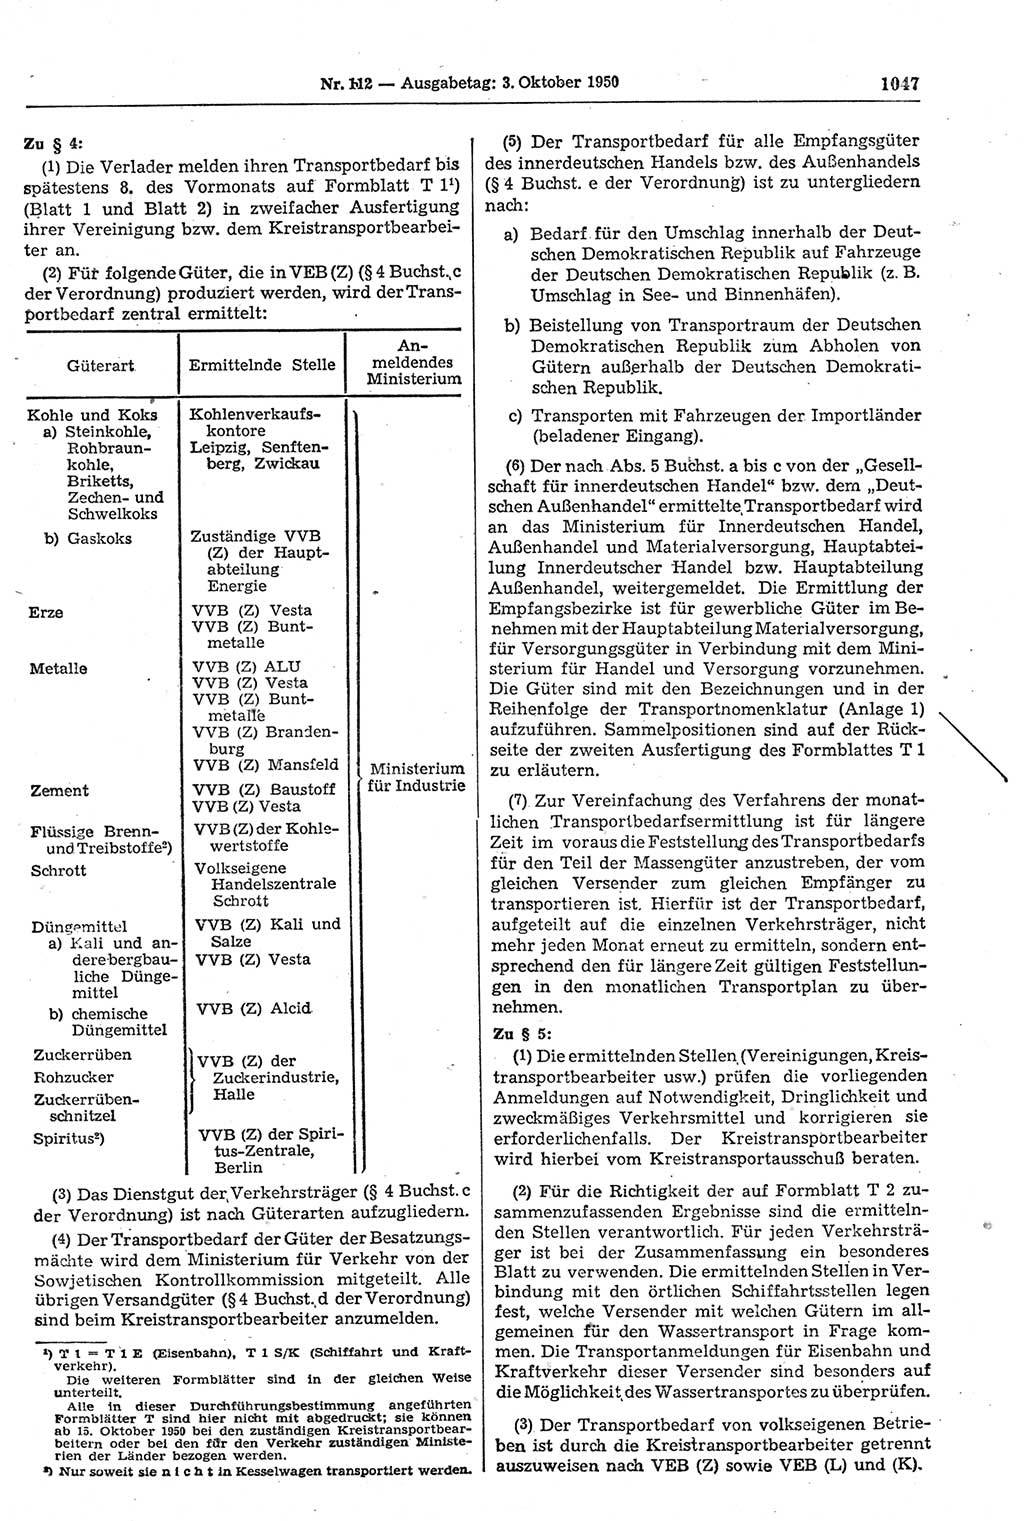 Gesetzblatt (GBl.) der Deutschen Demokratischen Republik (DDR) 1950, Seite 1047 (GBl. DDR 1950, S. 1047)